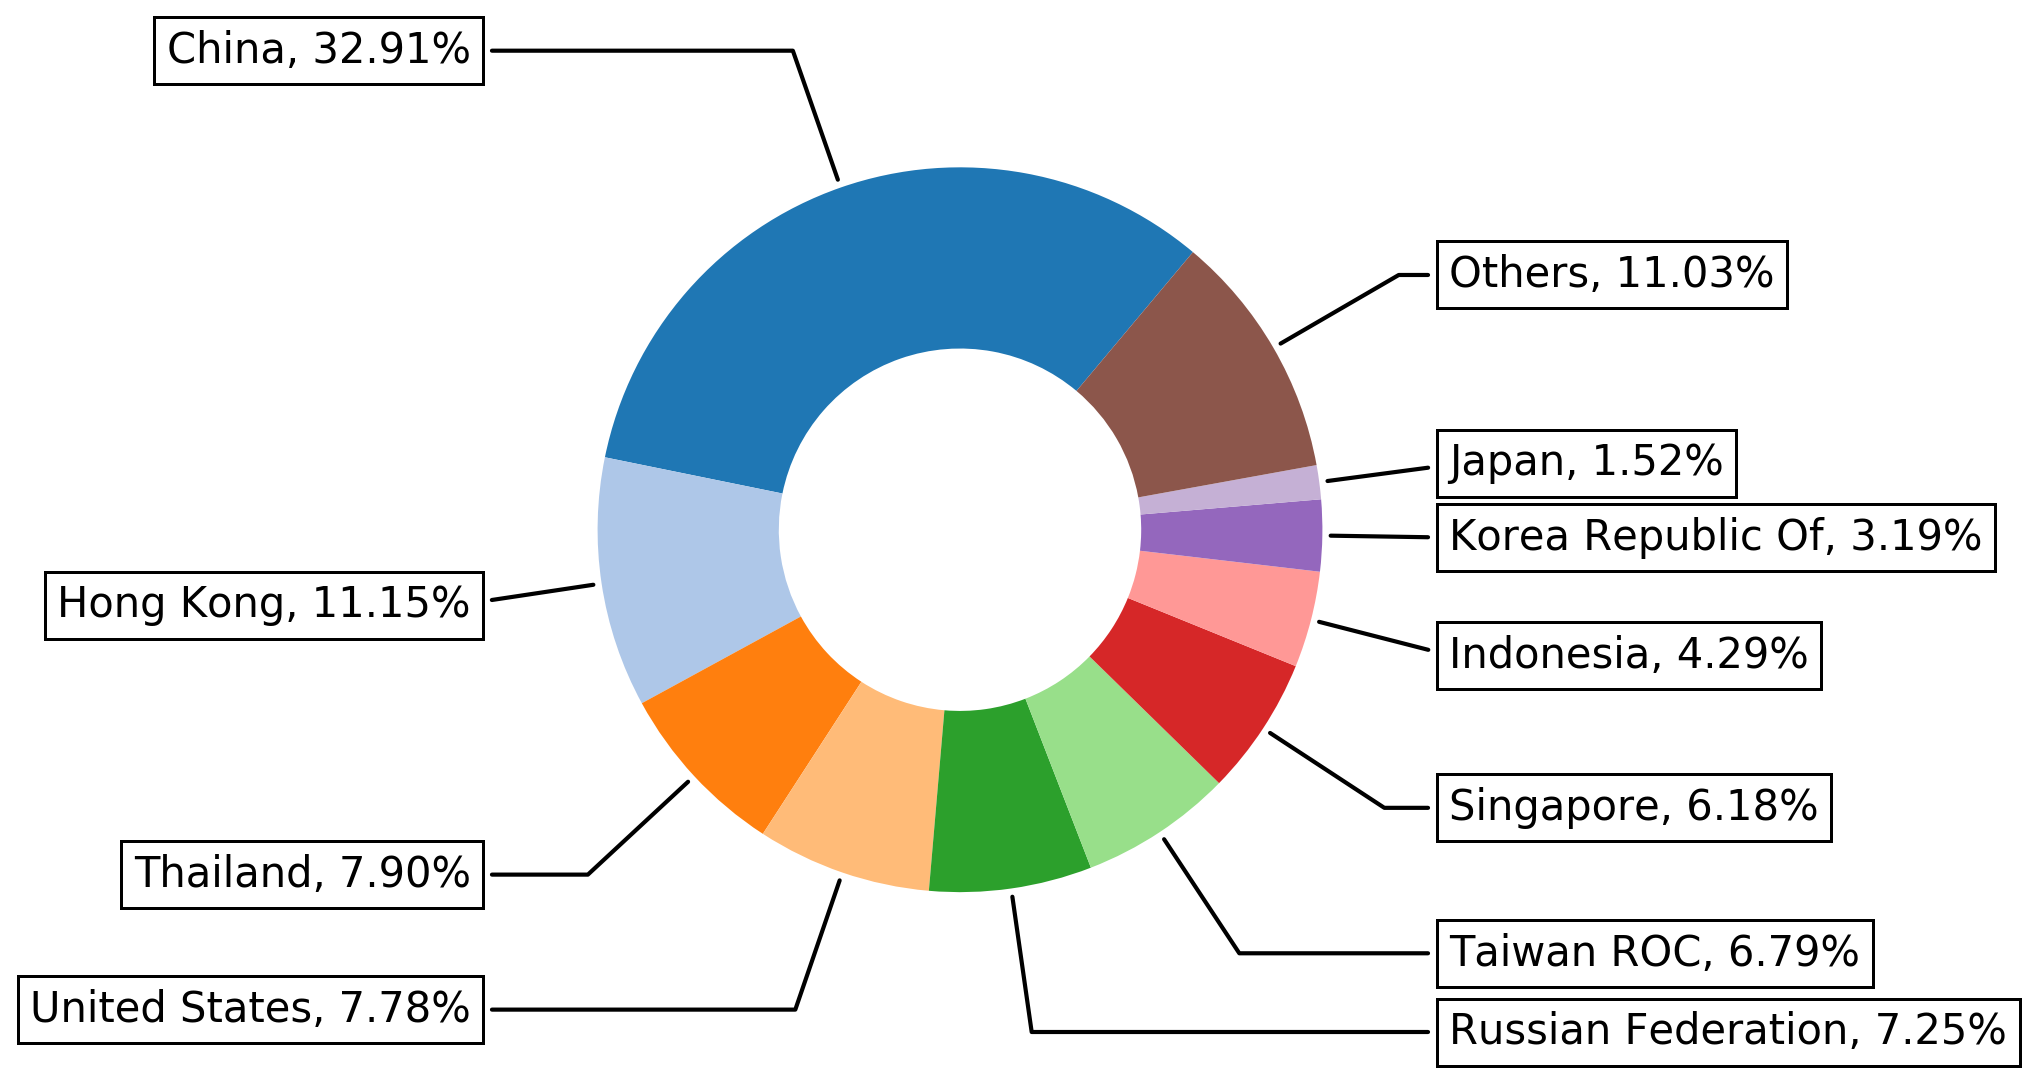 CVE-2012-2311およびCVE-2012-1823を悪用した攻撃の起点となった国上位10か国: 中国 32.91％、香港 11.15％、タイ 7.90％、米国 7.78％、ロシア連邦 7.25％、台湾ROC 6.79％、シンガポール 6.18％、インドネシア 4.29％、韓国 3.19％、日本 1.52％、その他 11.03％